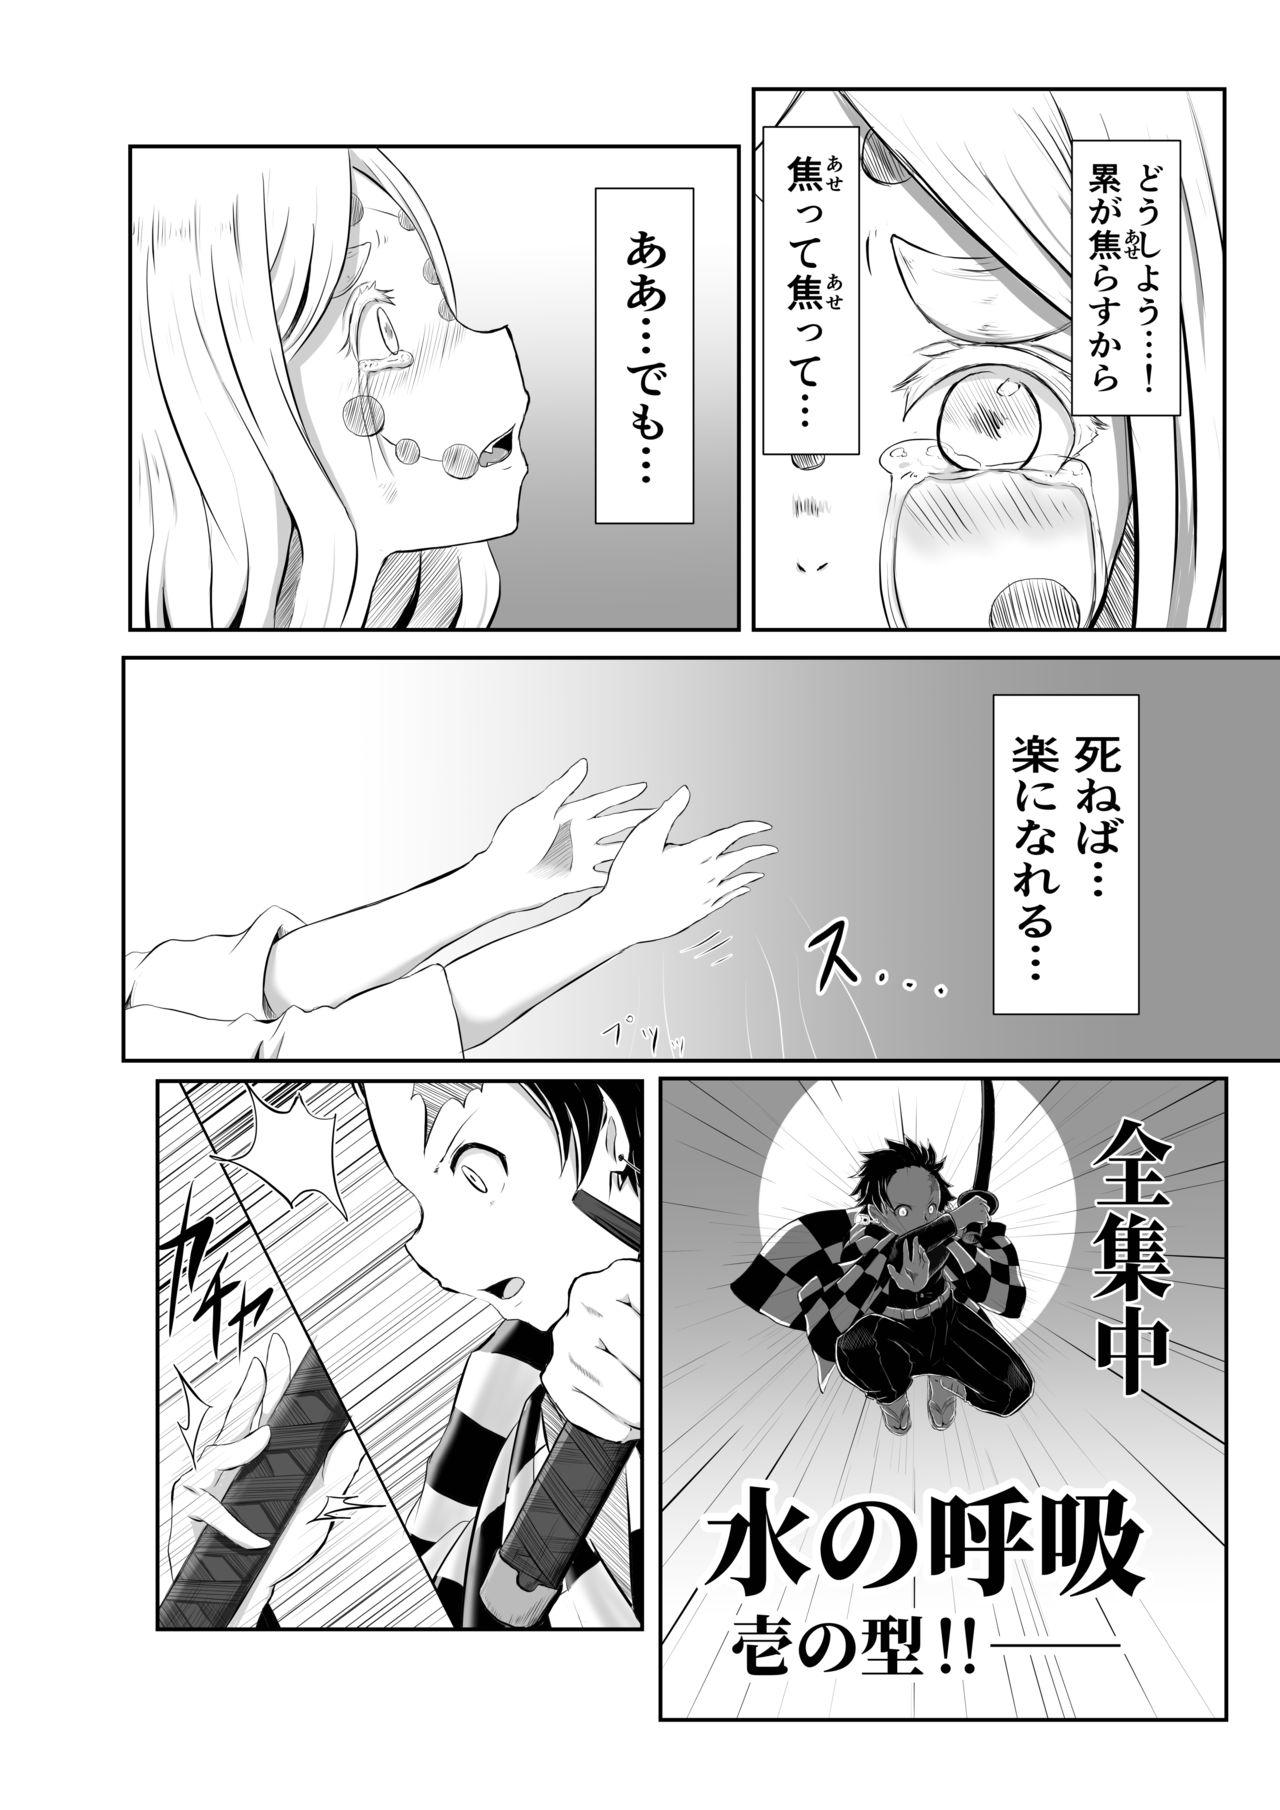 Brother Hinokami Sex. - Kimetsu no yaiba | demon slayer Sharing - Page 2